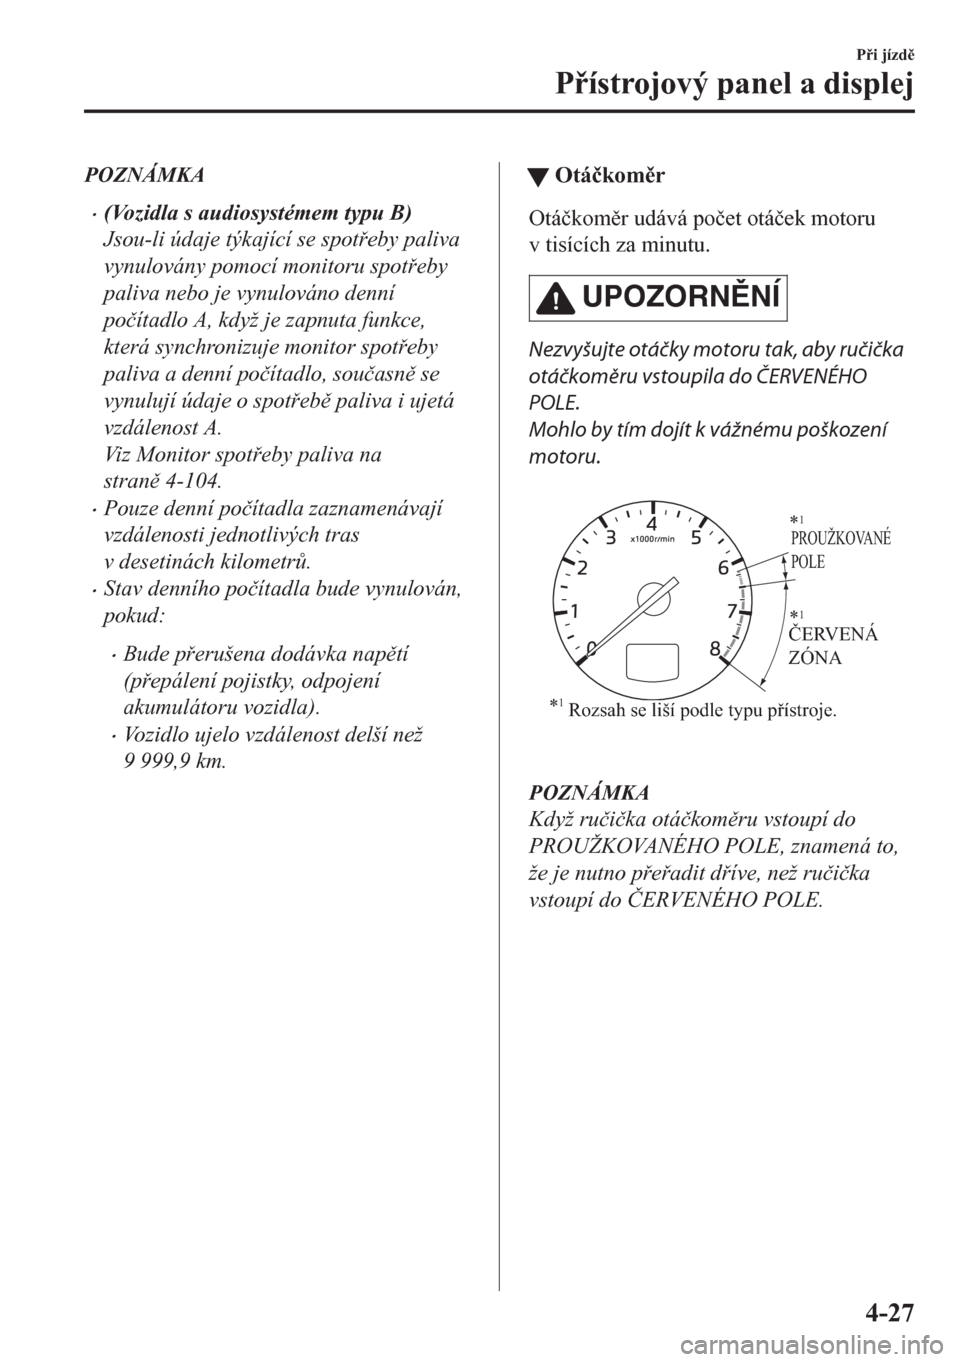 MAZDA MODEL CX-5 2018  Návod k obsluze (in Czech) POZNÁMKA
•(Vozidla s audiosystémem typu B)
Jsou-li údaje týkající se spoteby paliva
vynulovány pomocí monitoru spoteby
paliva nebo je vynulováno denní
po�þítadlo A, když je zapnuta 